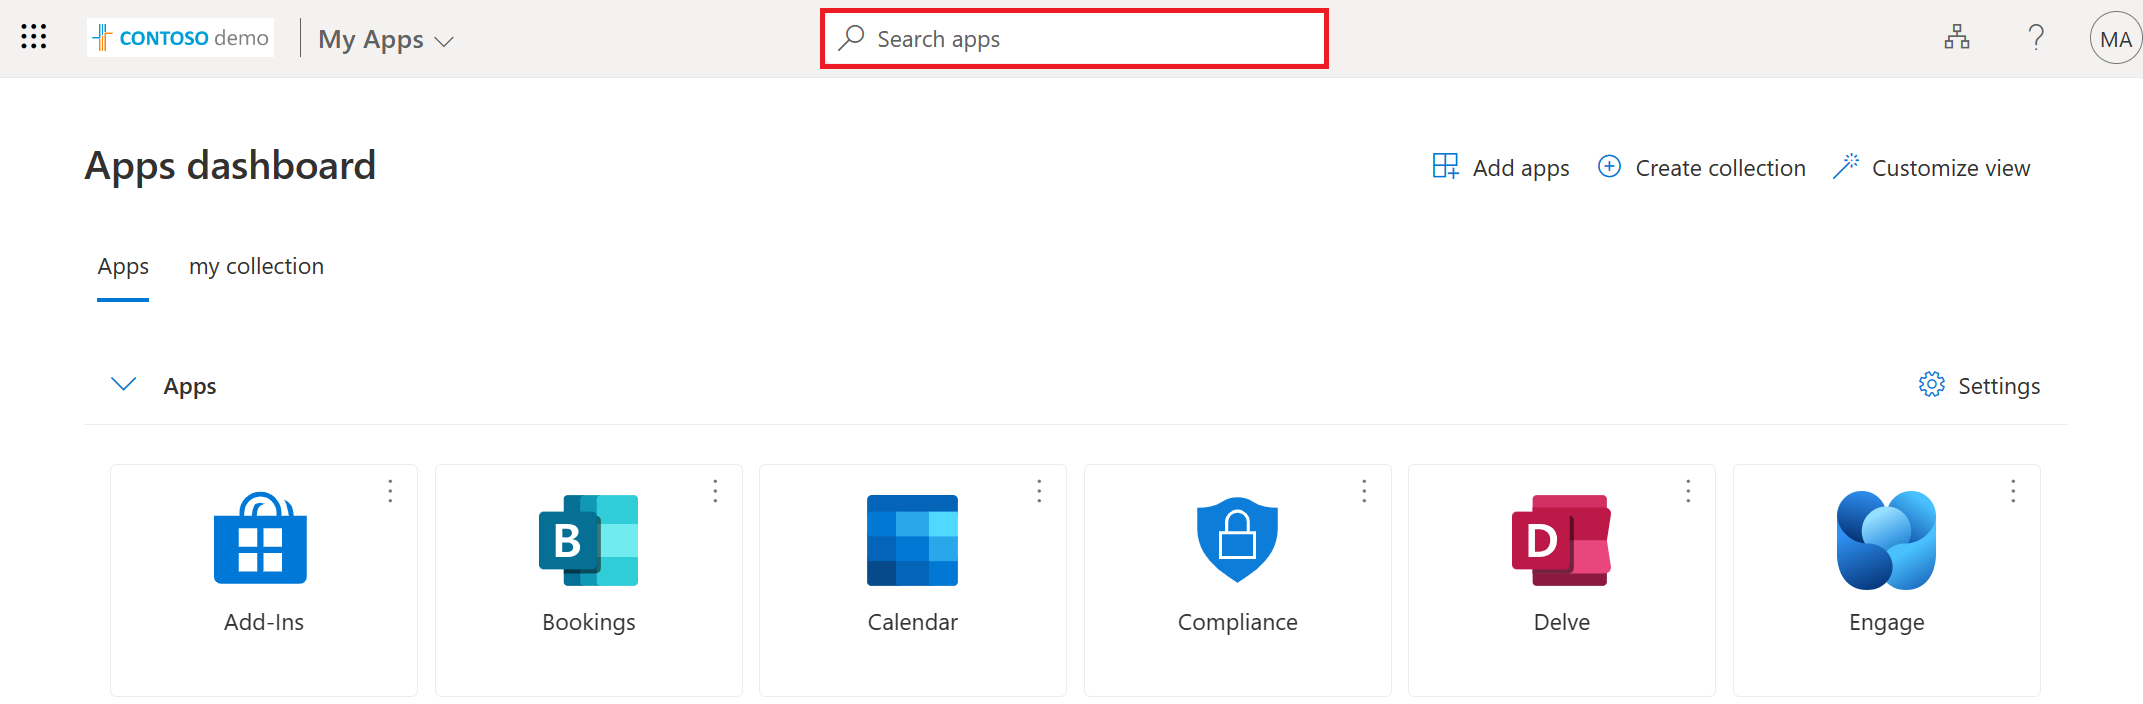 Captura de pantalla que muestra el cuadro de búsqueda del portal Mis aplicaciones.